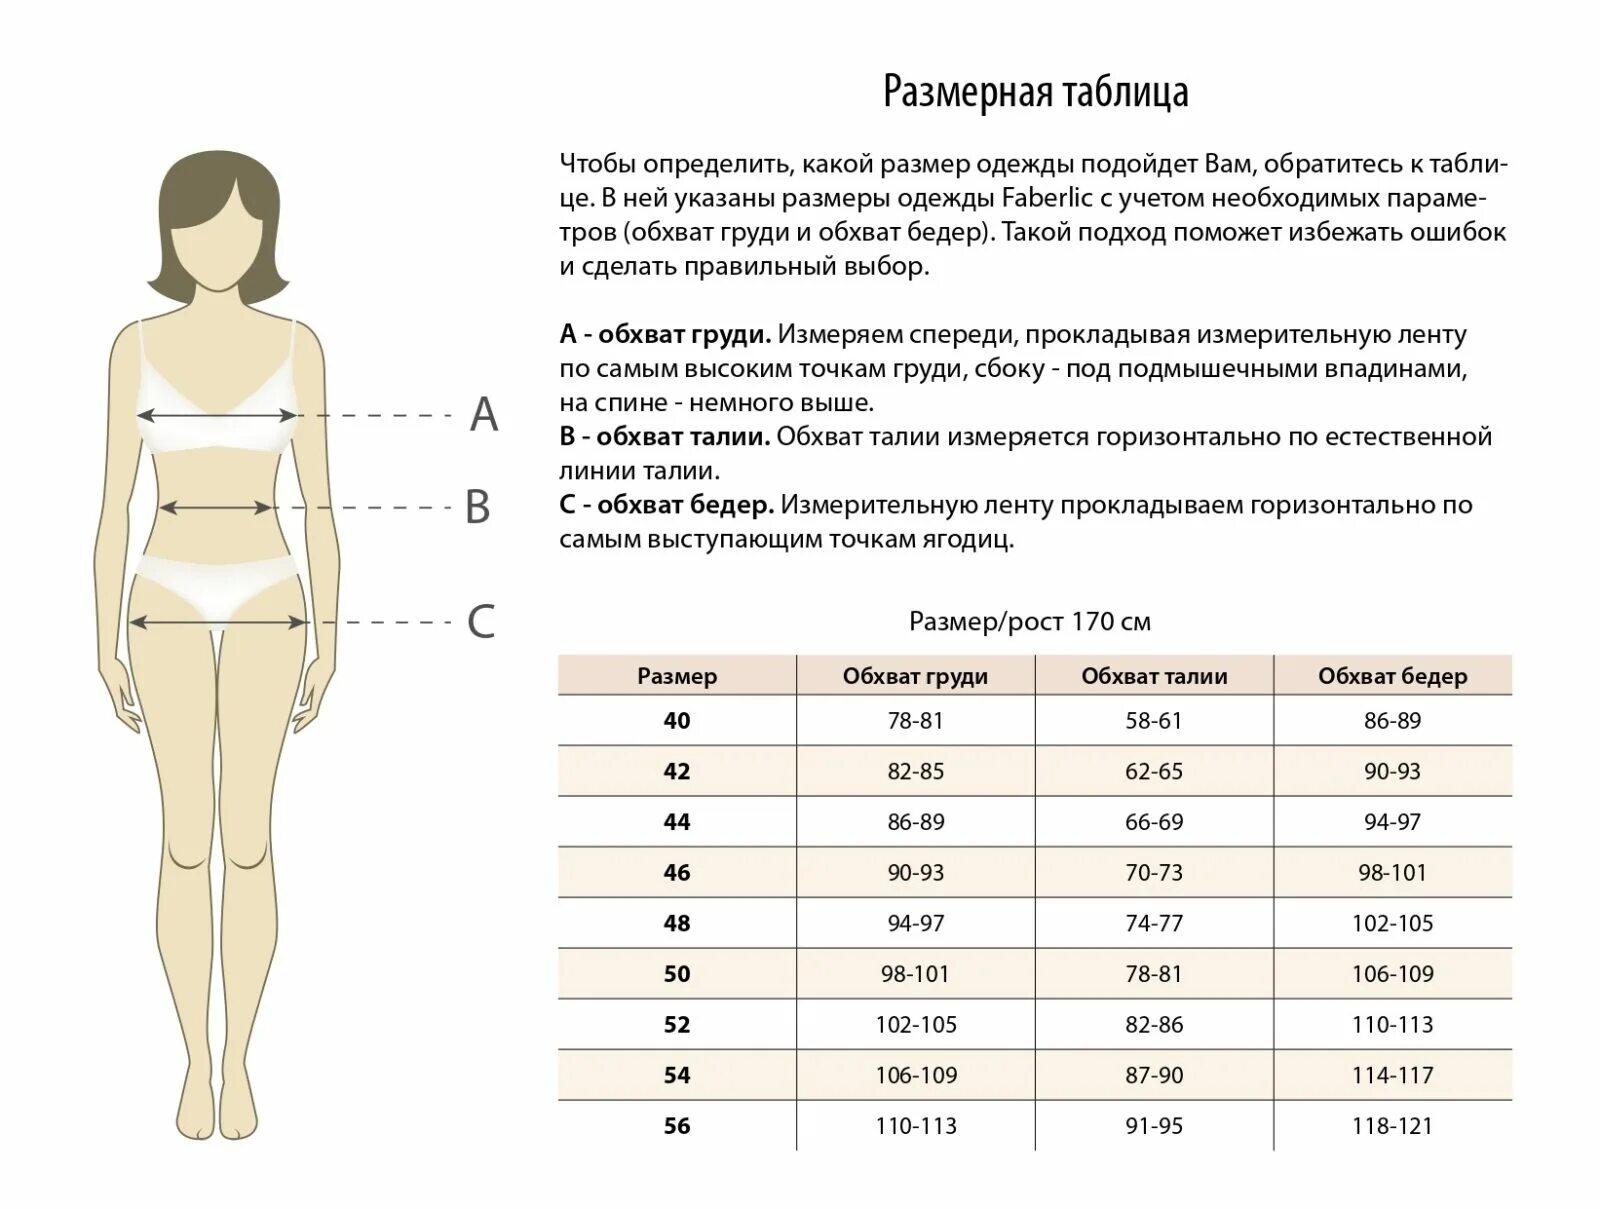 Бедро сколько см. Размерная сетка одежды Фаберлик для женщин. Как определить размер одежды для женщины таблица. Как понять свой размер одежды женской таблица размеров. Параметры размерной сетки в женской одежде.